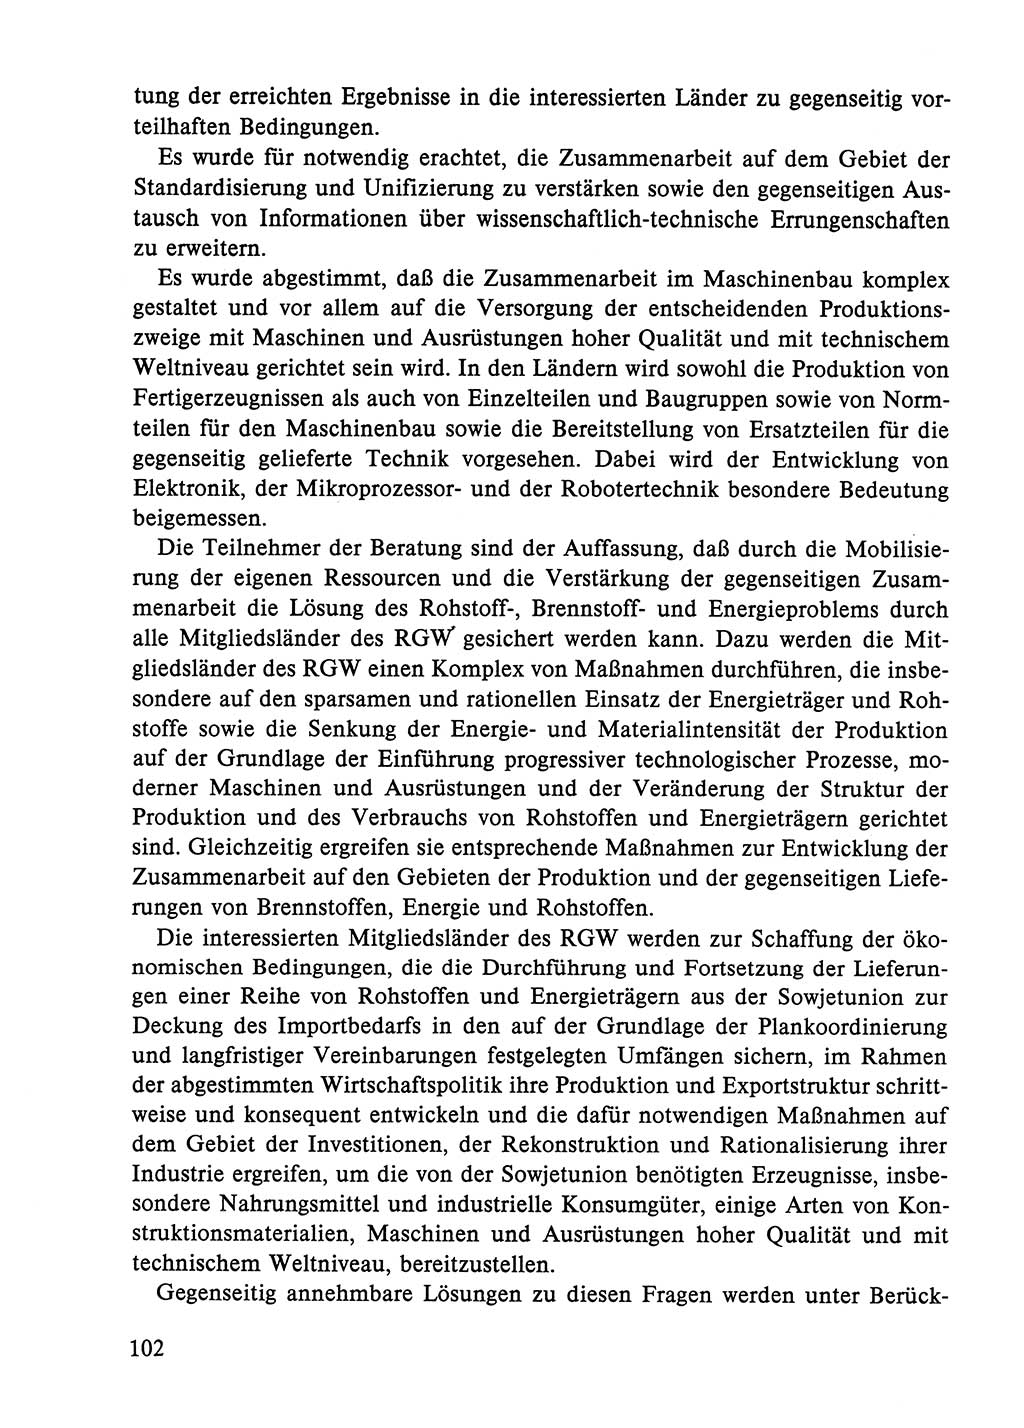 Dokumente der Sozialistischen Einheitspartei Deutschlands (SED) [Deutsche Demokratische Republik (DDR)] 1984-1985, Seite 325 (Dok. SED DDR 1984-1985, S. 325)